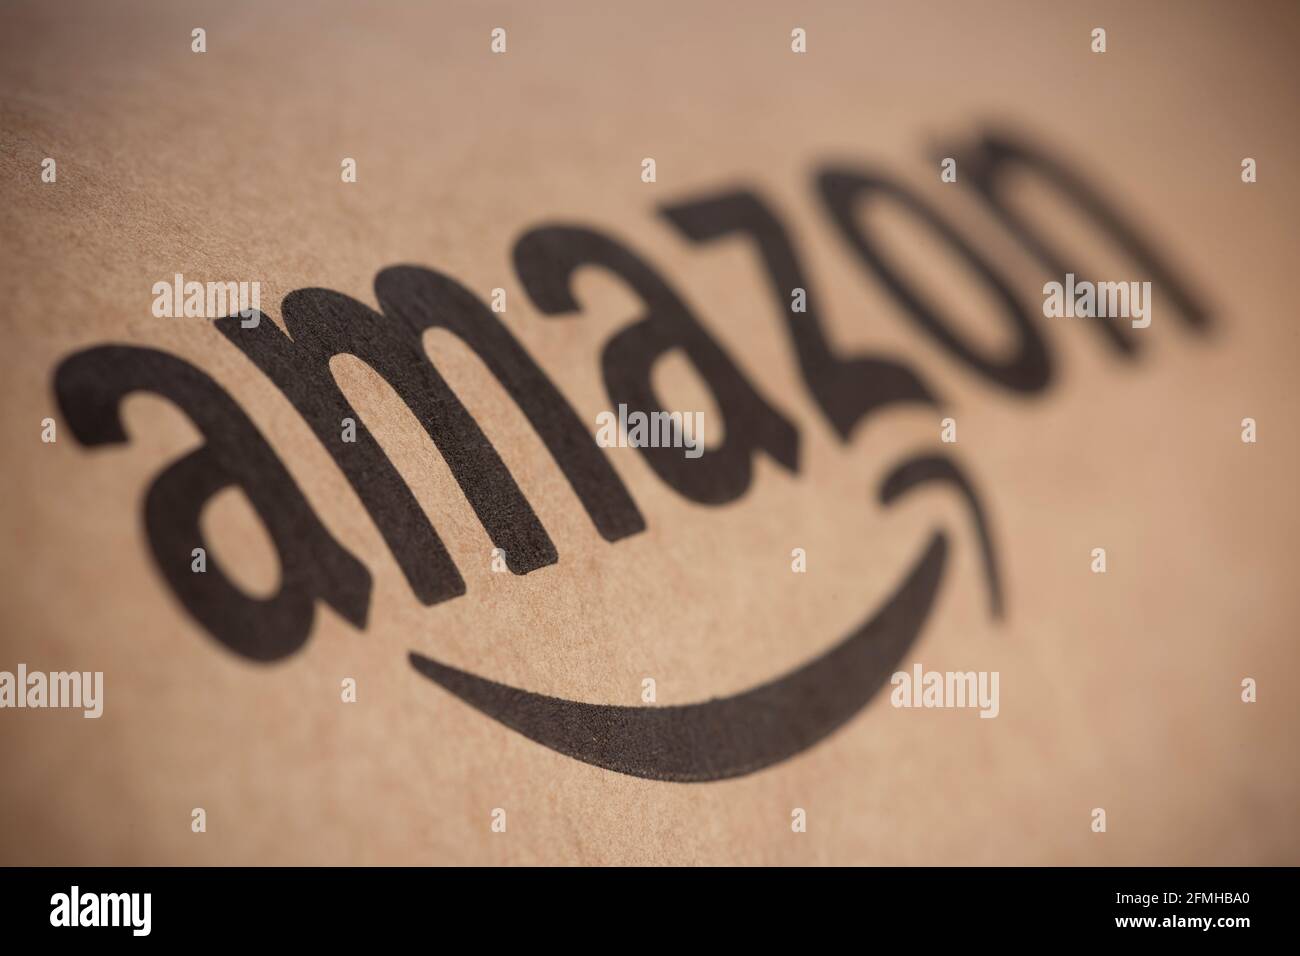 Eine Nahaufnahme des Logos des Online-Händlers Amazon, wie sie auf einigen Verpackungen zu sehen ist. Stockfoto